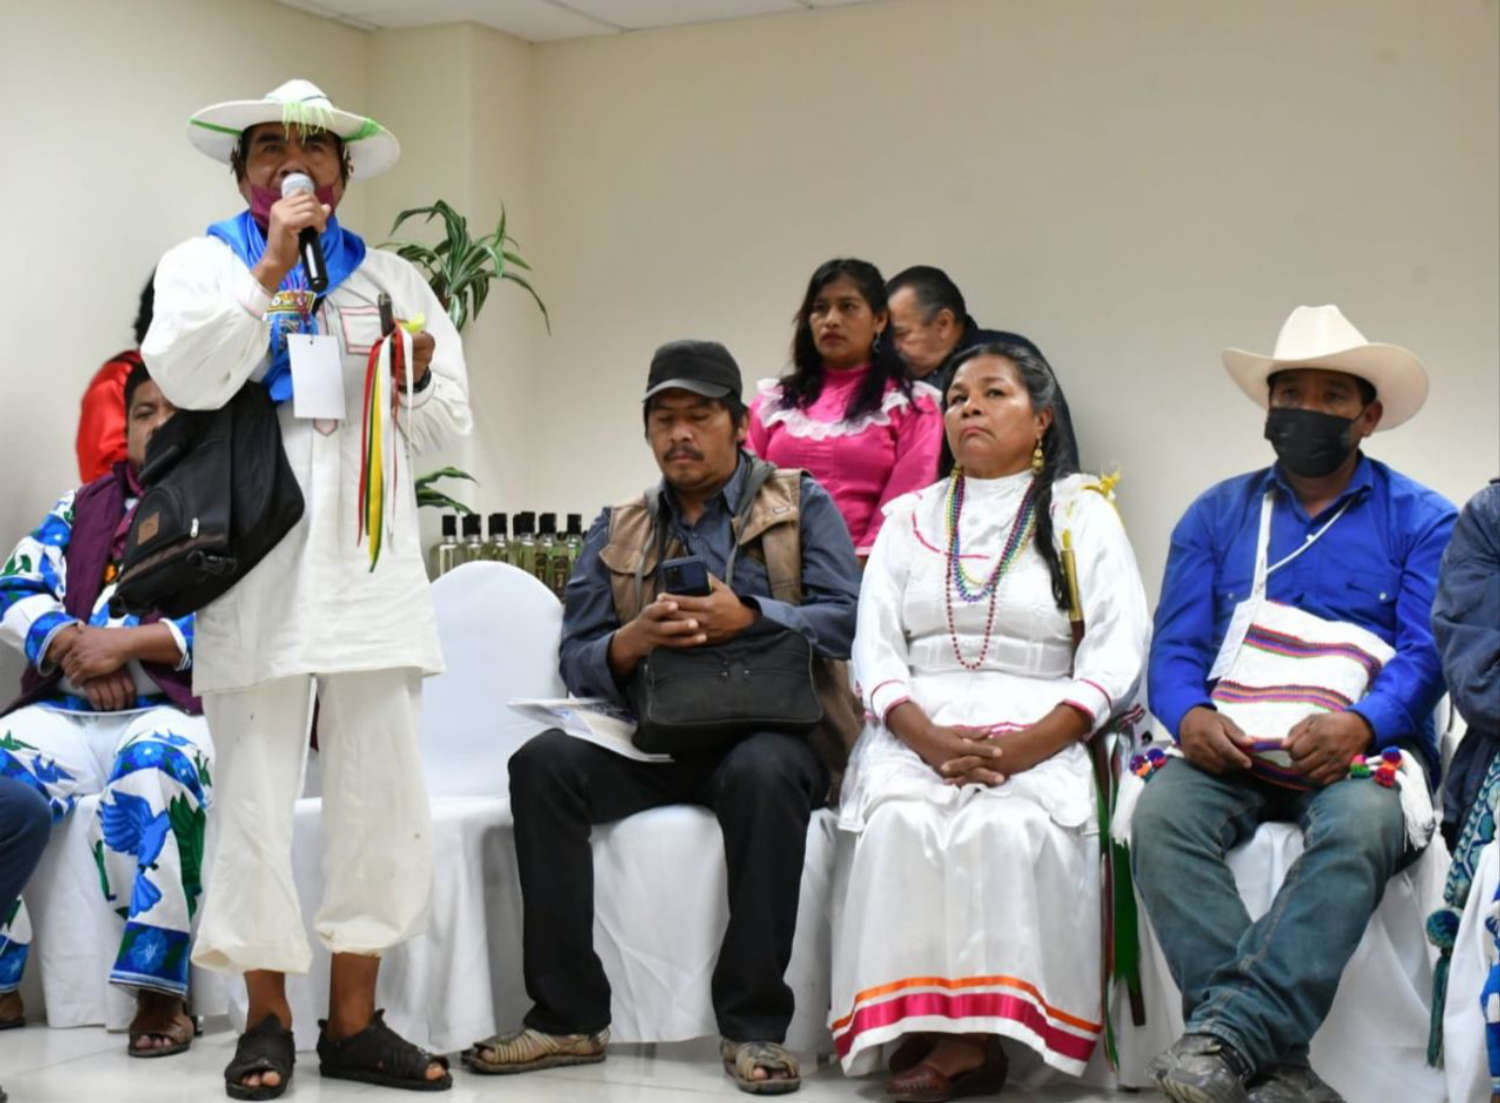 Gobierno de México y Autoridades Tradicionales construyen ruta del Plan de Justicia de los Pueblos Wixárika, Na’ayeri, O’dam y Meshikan